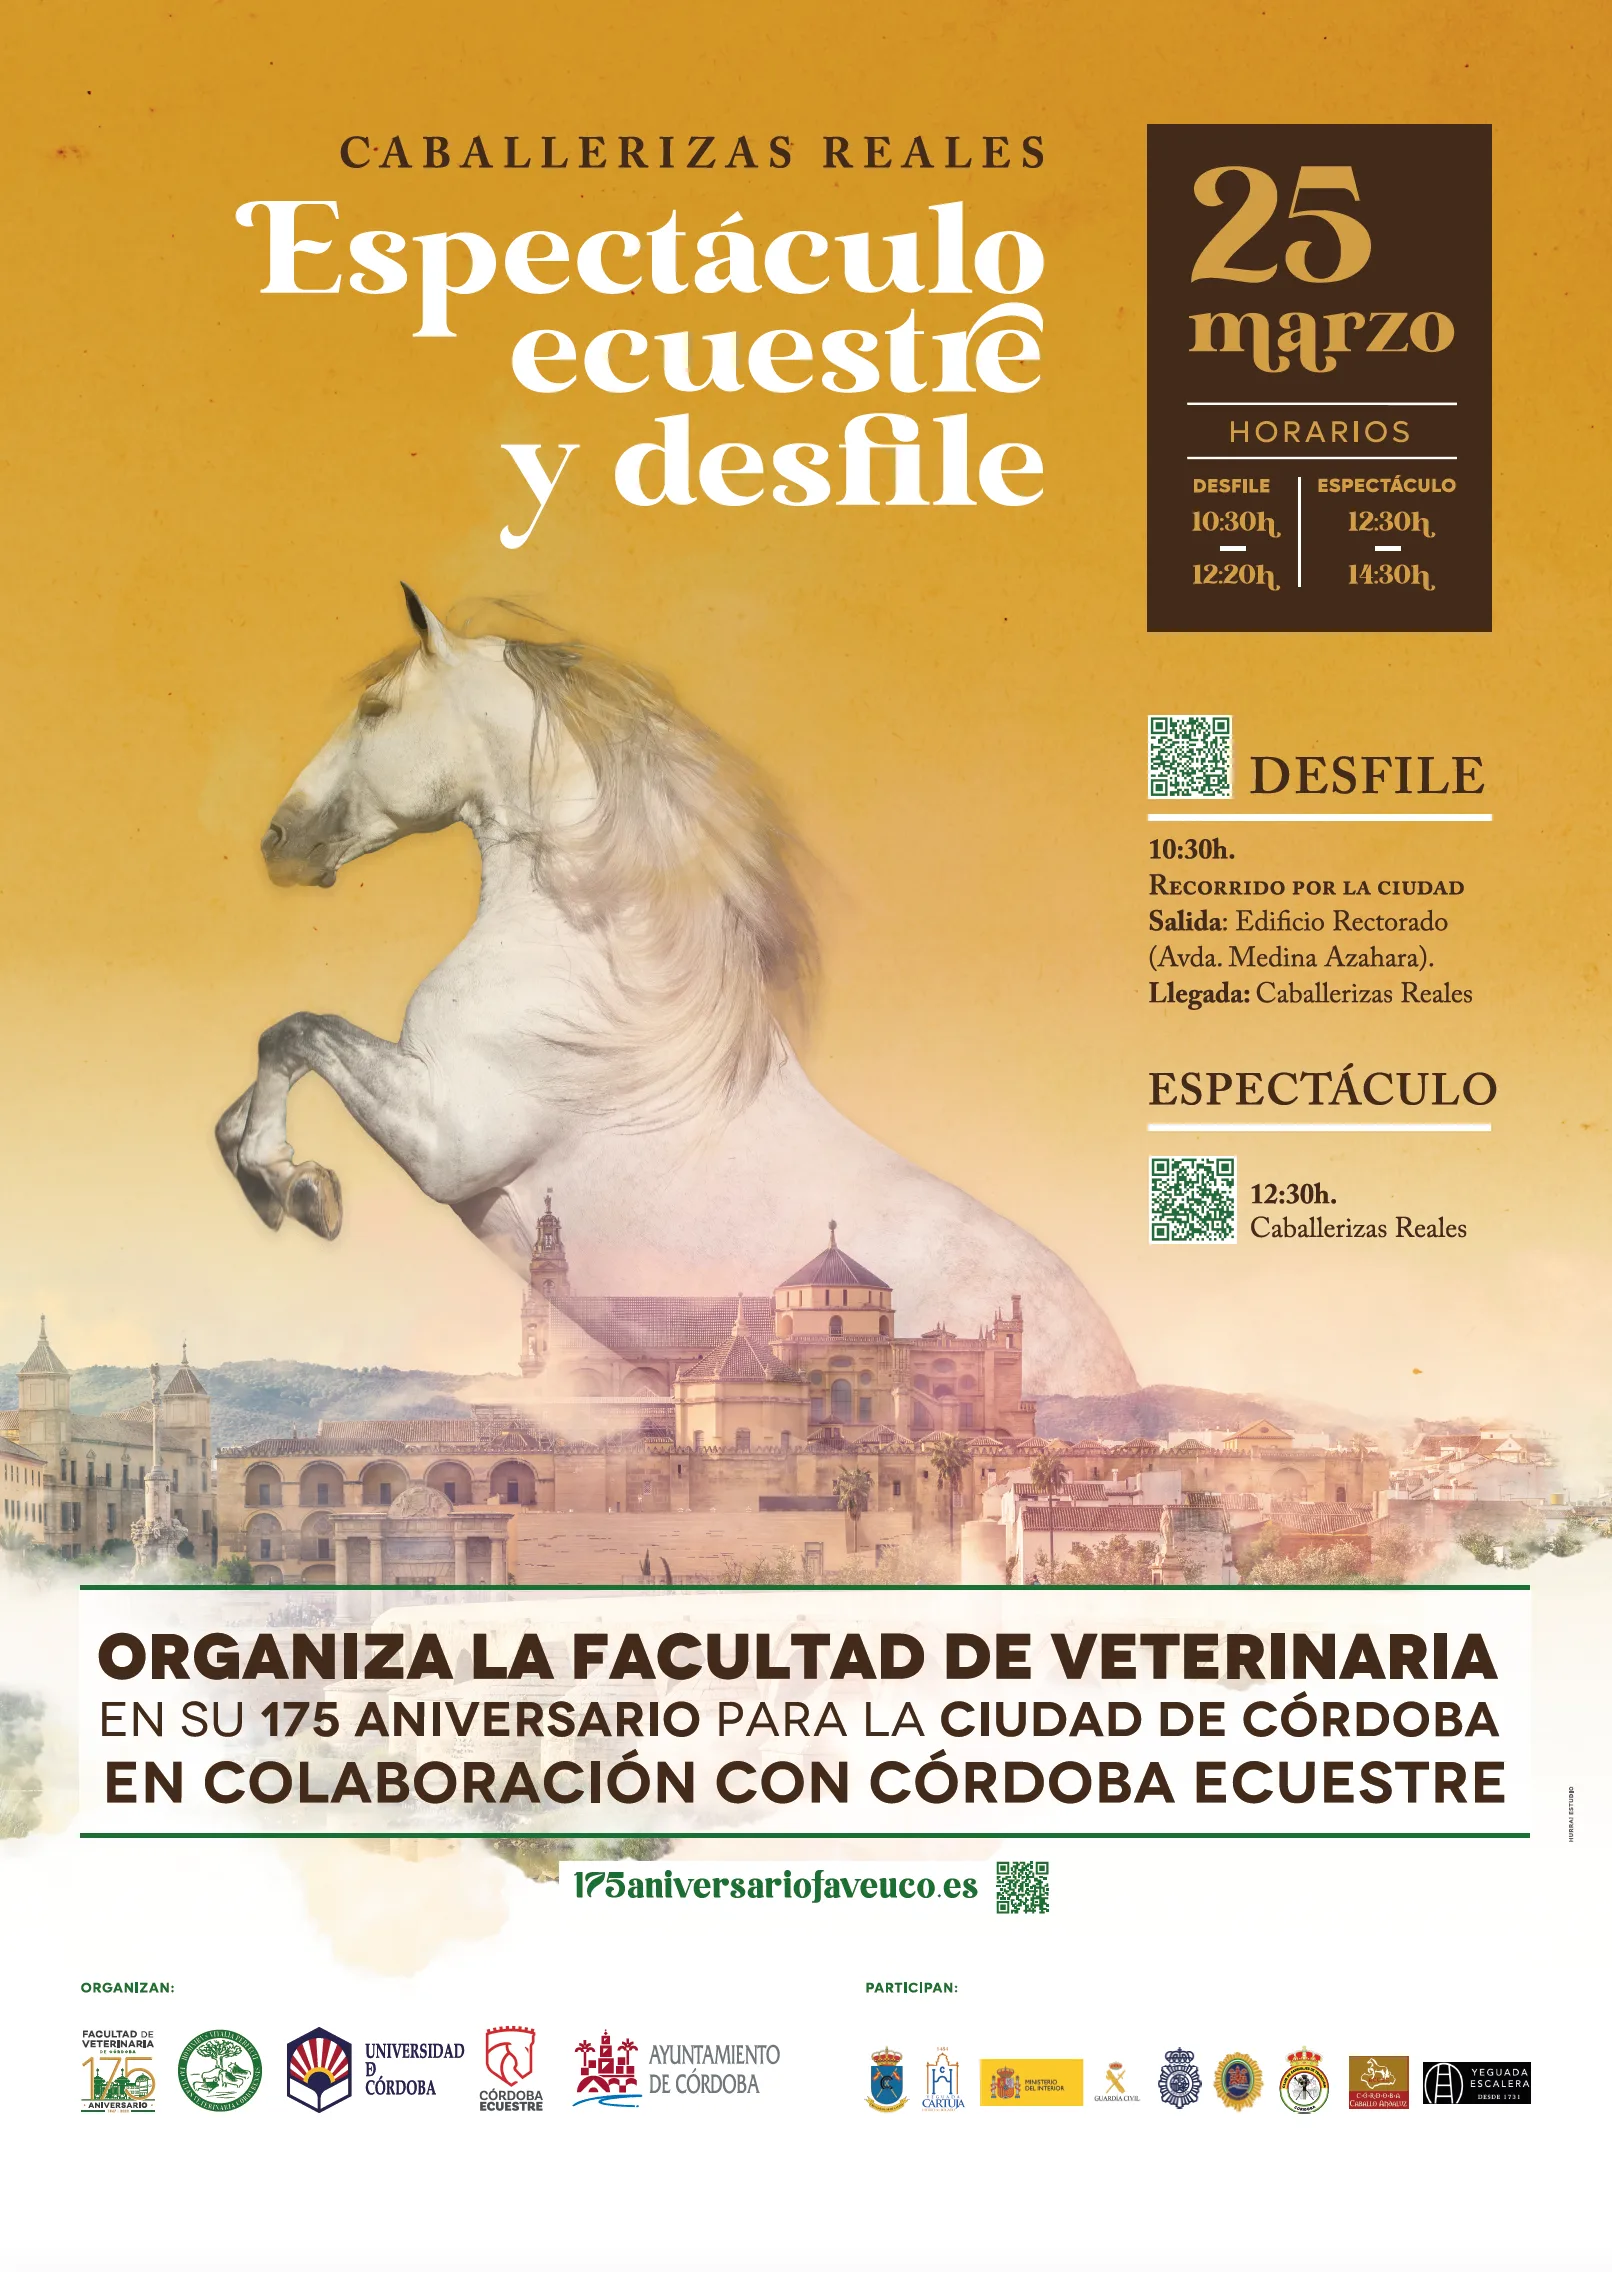 Cartel del espectáculo ecuestre y desfile de la Facultad de Veterinaria de Córdoba en celebración de su 175 aniversario.